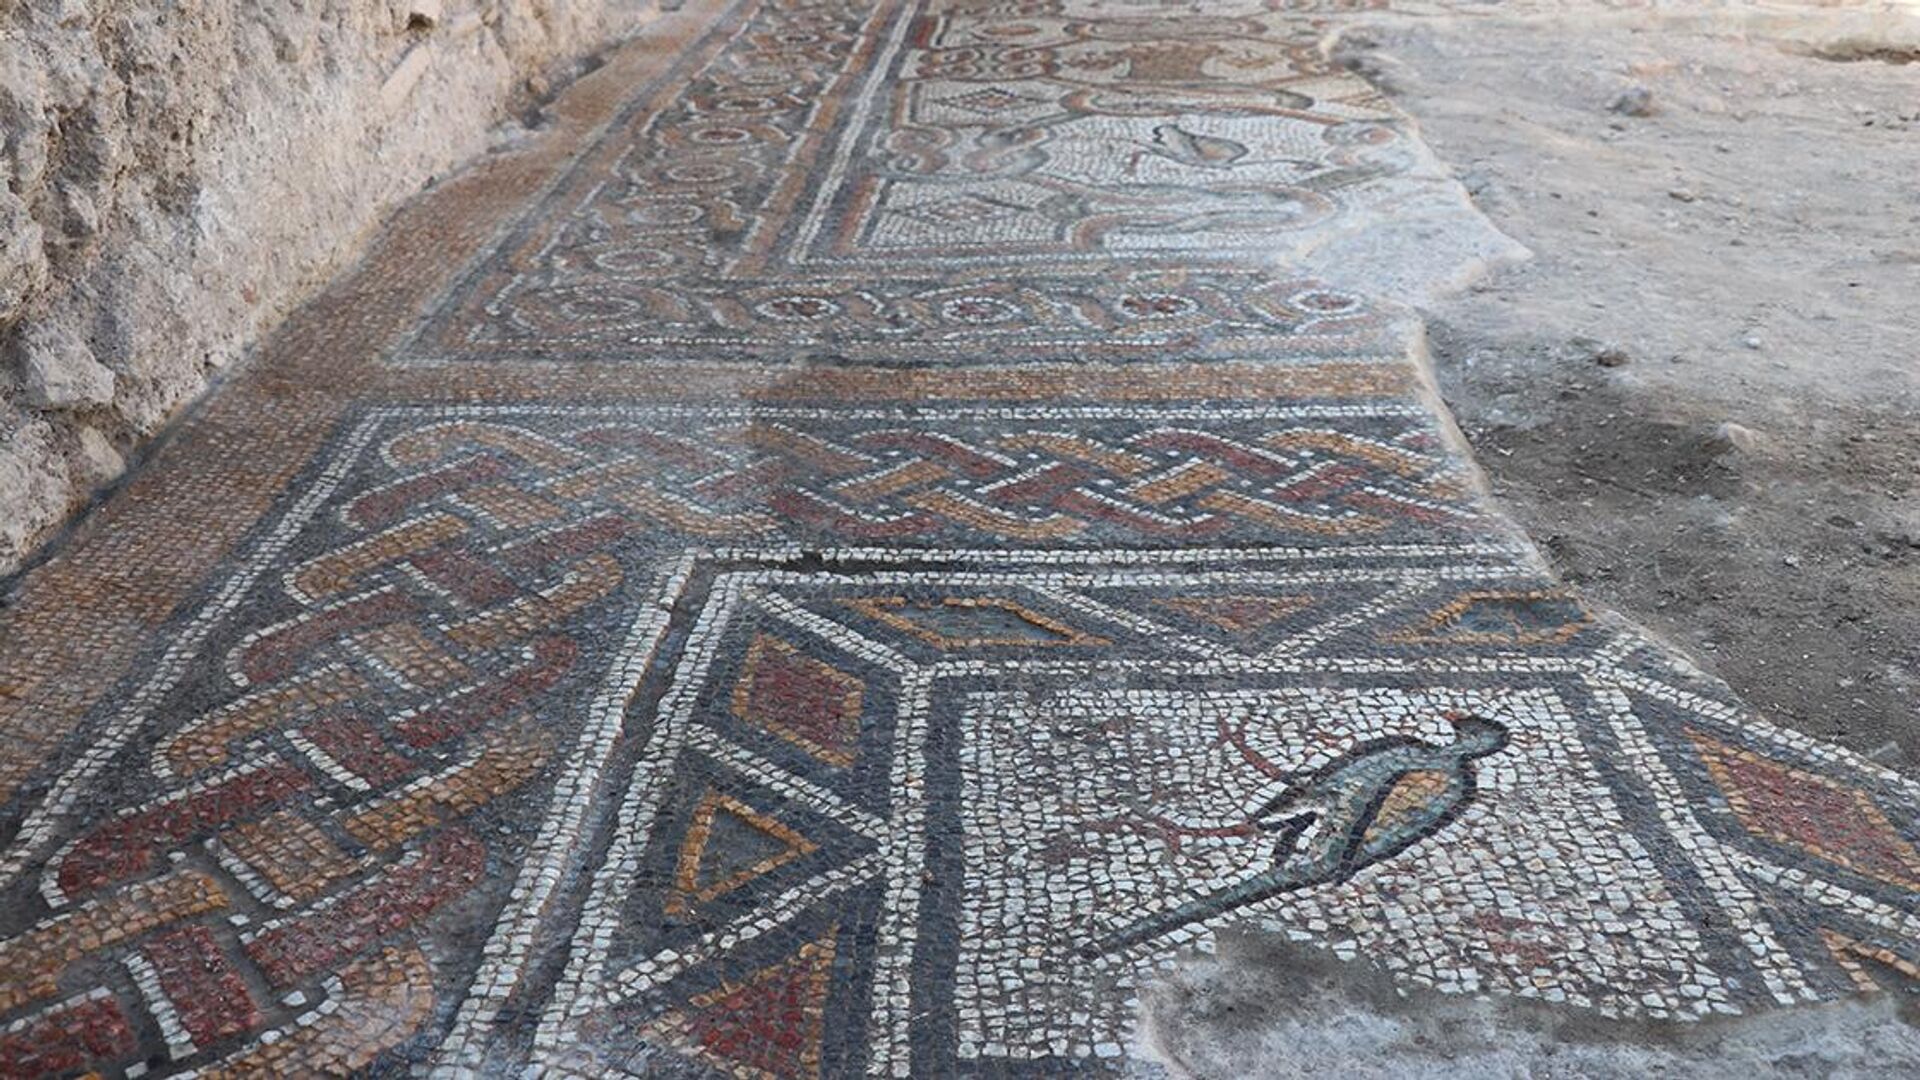 Doç. Dr. Çelikbaş, gazetecilere, mozaiklerin gerçekten çok ilginç figürleri ve sahneleri içerdiğini belirterek, Mozaikler milattan sonra 4. ve 5. yüzyıla tarihleniyor. Hadrianopolis'te daha önce tespit edilmiş olan mozaiklerden biraz daha erken özellikler gösterdiğini söyleyebiliriz dedi. - Sputnik Türkiye, 1920, 02.10.2022